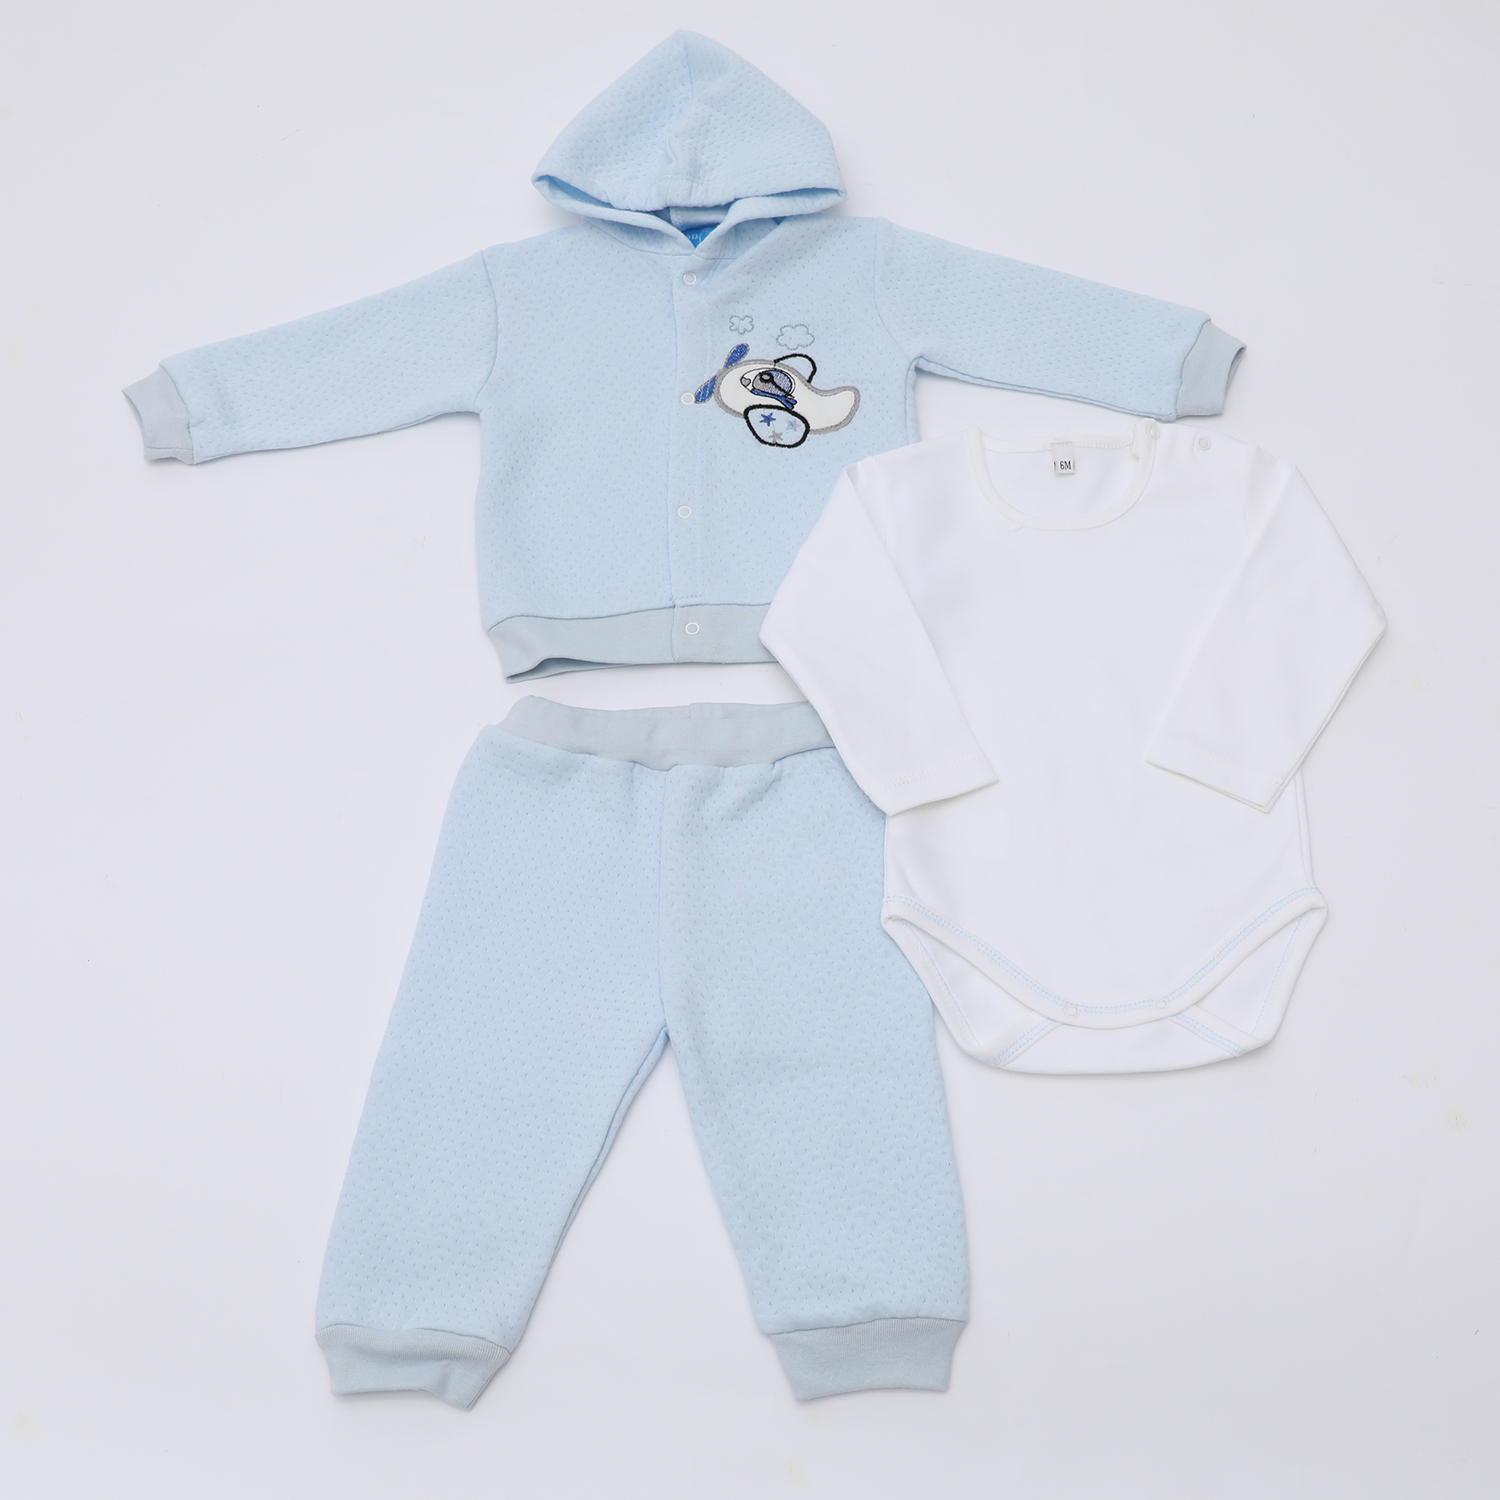 Παιδικά/Baby/Ρούχα/Σετ SAM 0-13 - Βρεφικό σετ από φορμάκι, παντελόνι και ζακέτα SAM 0-13 γαλάζιο λευκό